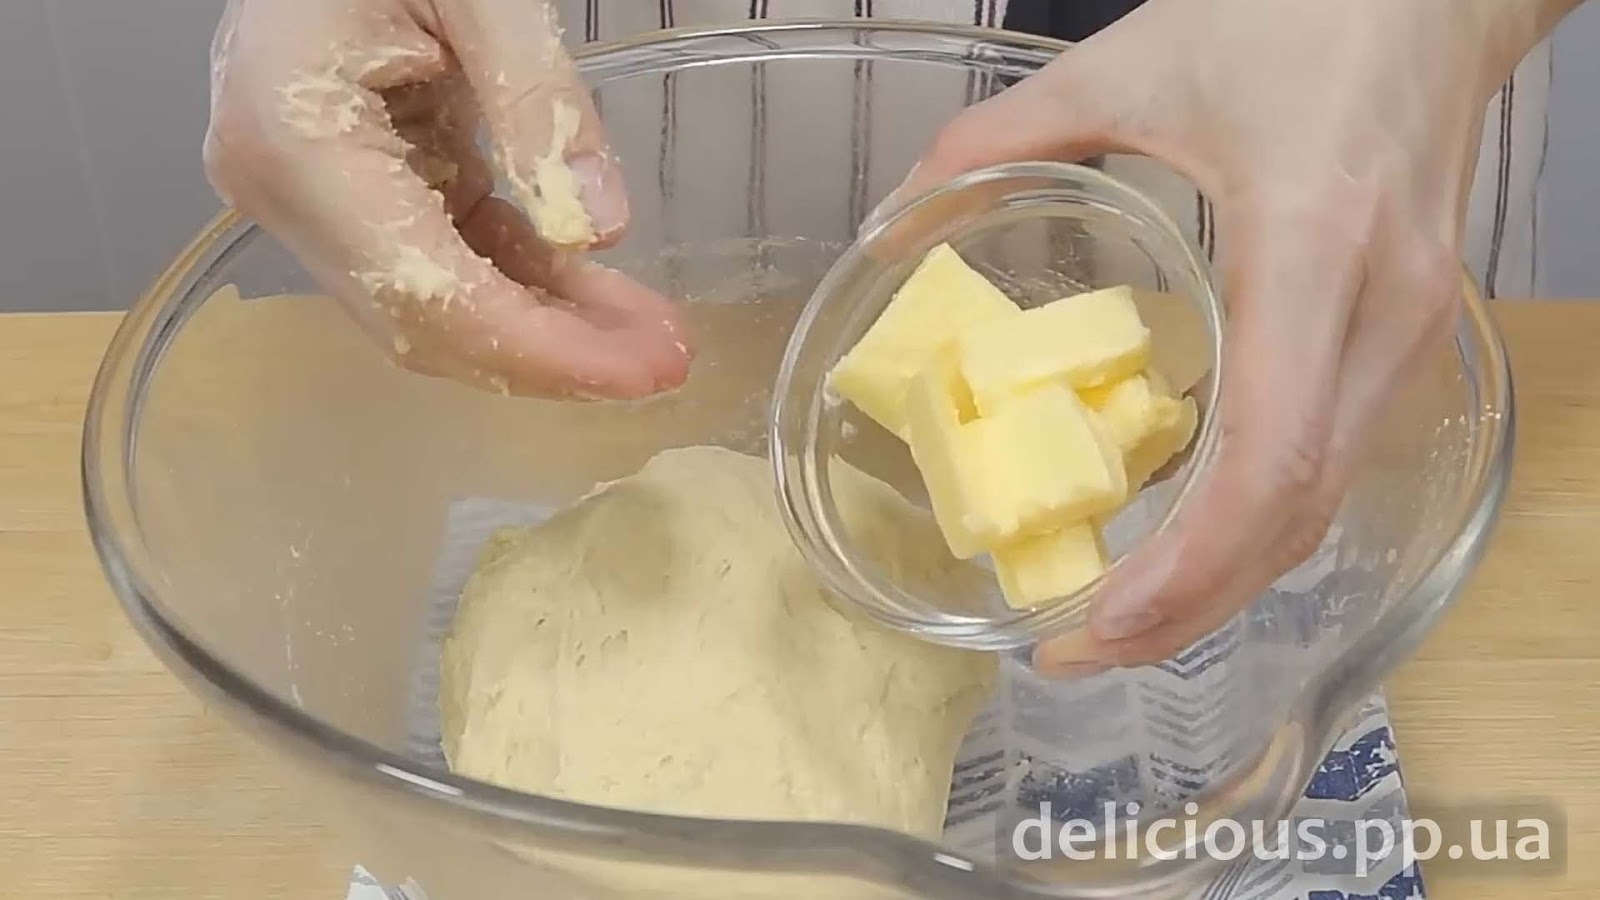 Фото приготовления рецепта: «Как приготовить пирожки. Рецепт пирожков в духовке. Тесто для пирожков к любой начинке.» - шаг №4